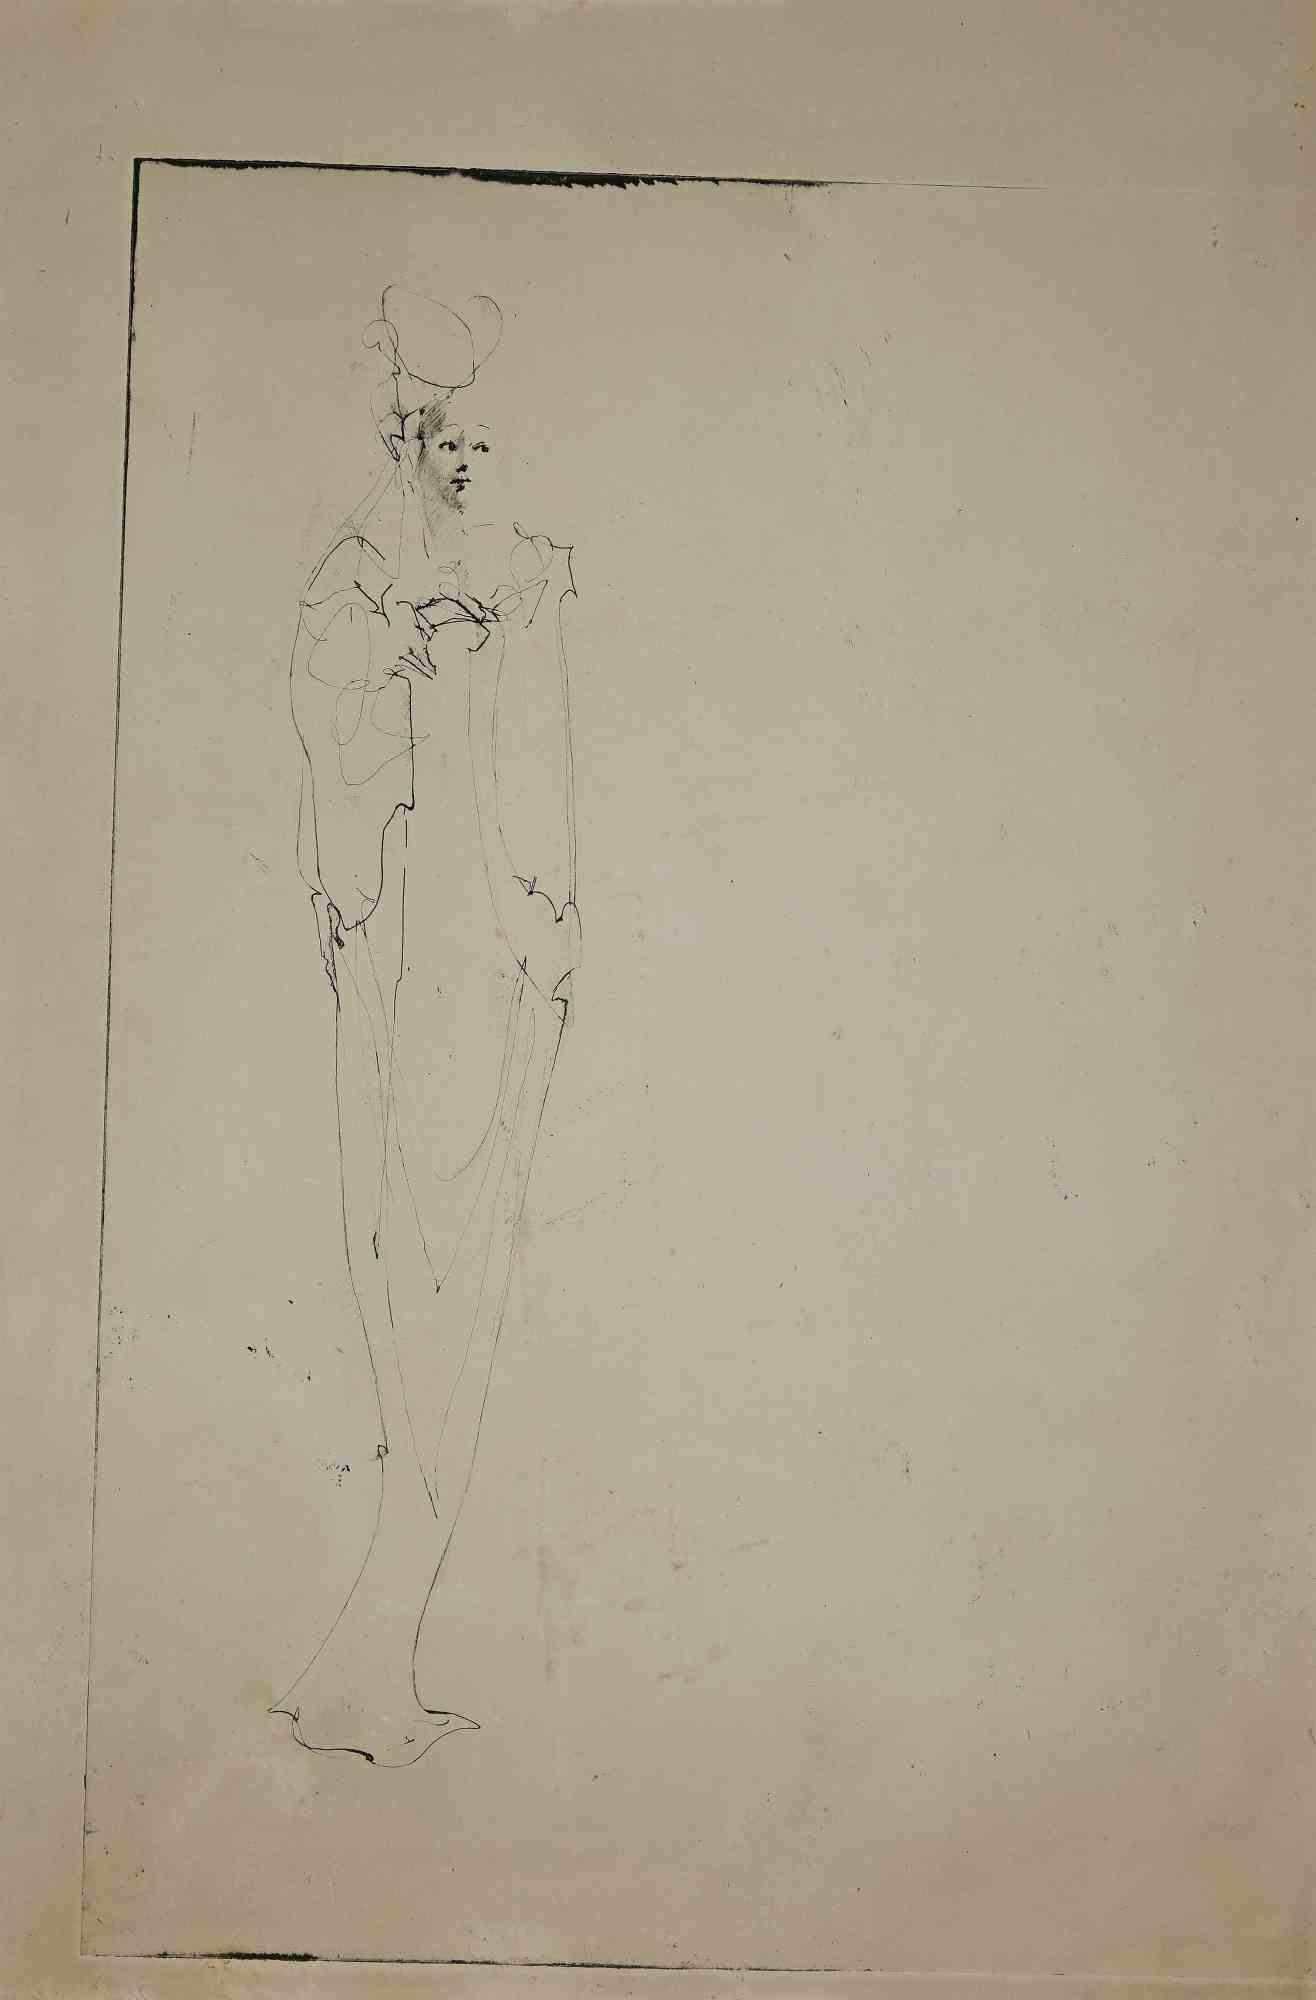 Woman est une gravure originale réalisée par Leonor Fini, un peintre argentin-italien qui a passé sa carrière artistique en France et a été associé au mouvement surréaliste.

Bon état sauf quelques légères rousseurs.

Signé à la main au dos.

Leonor